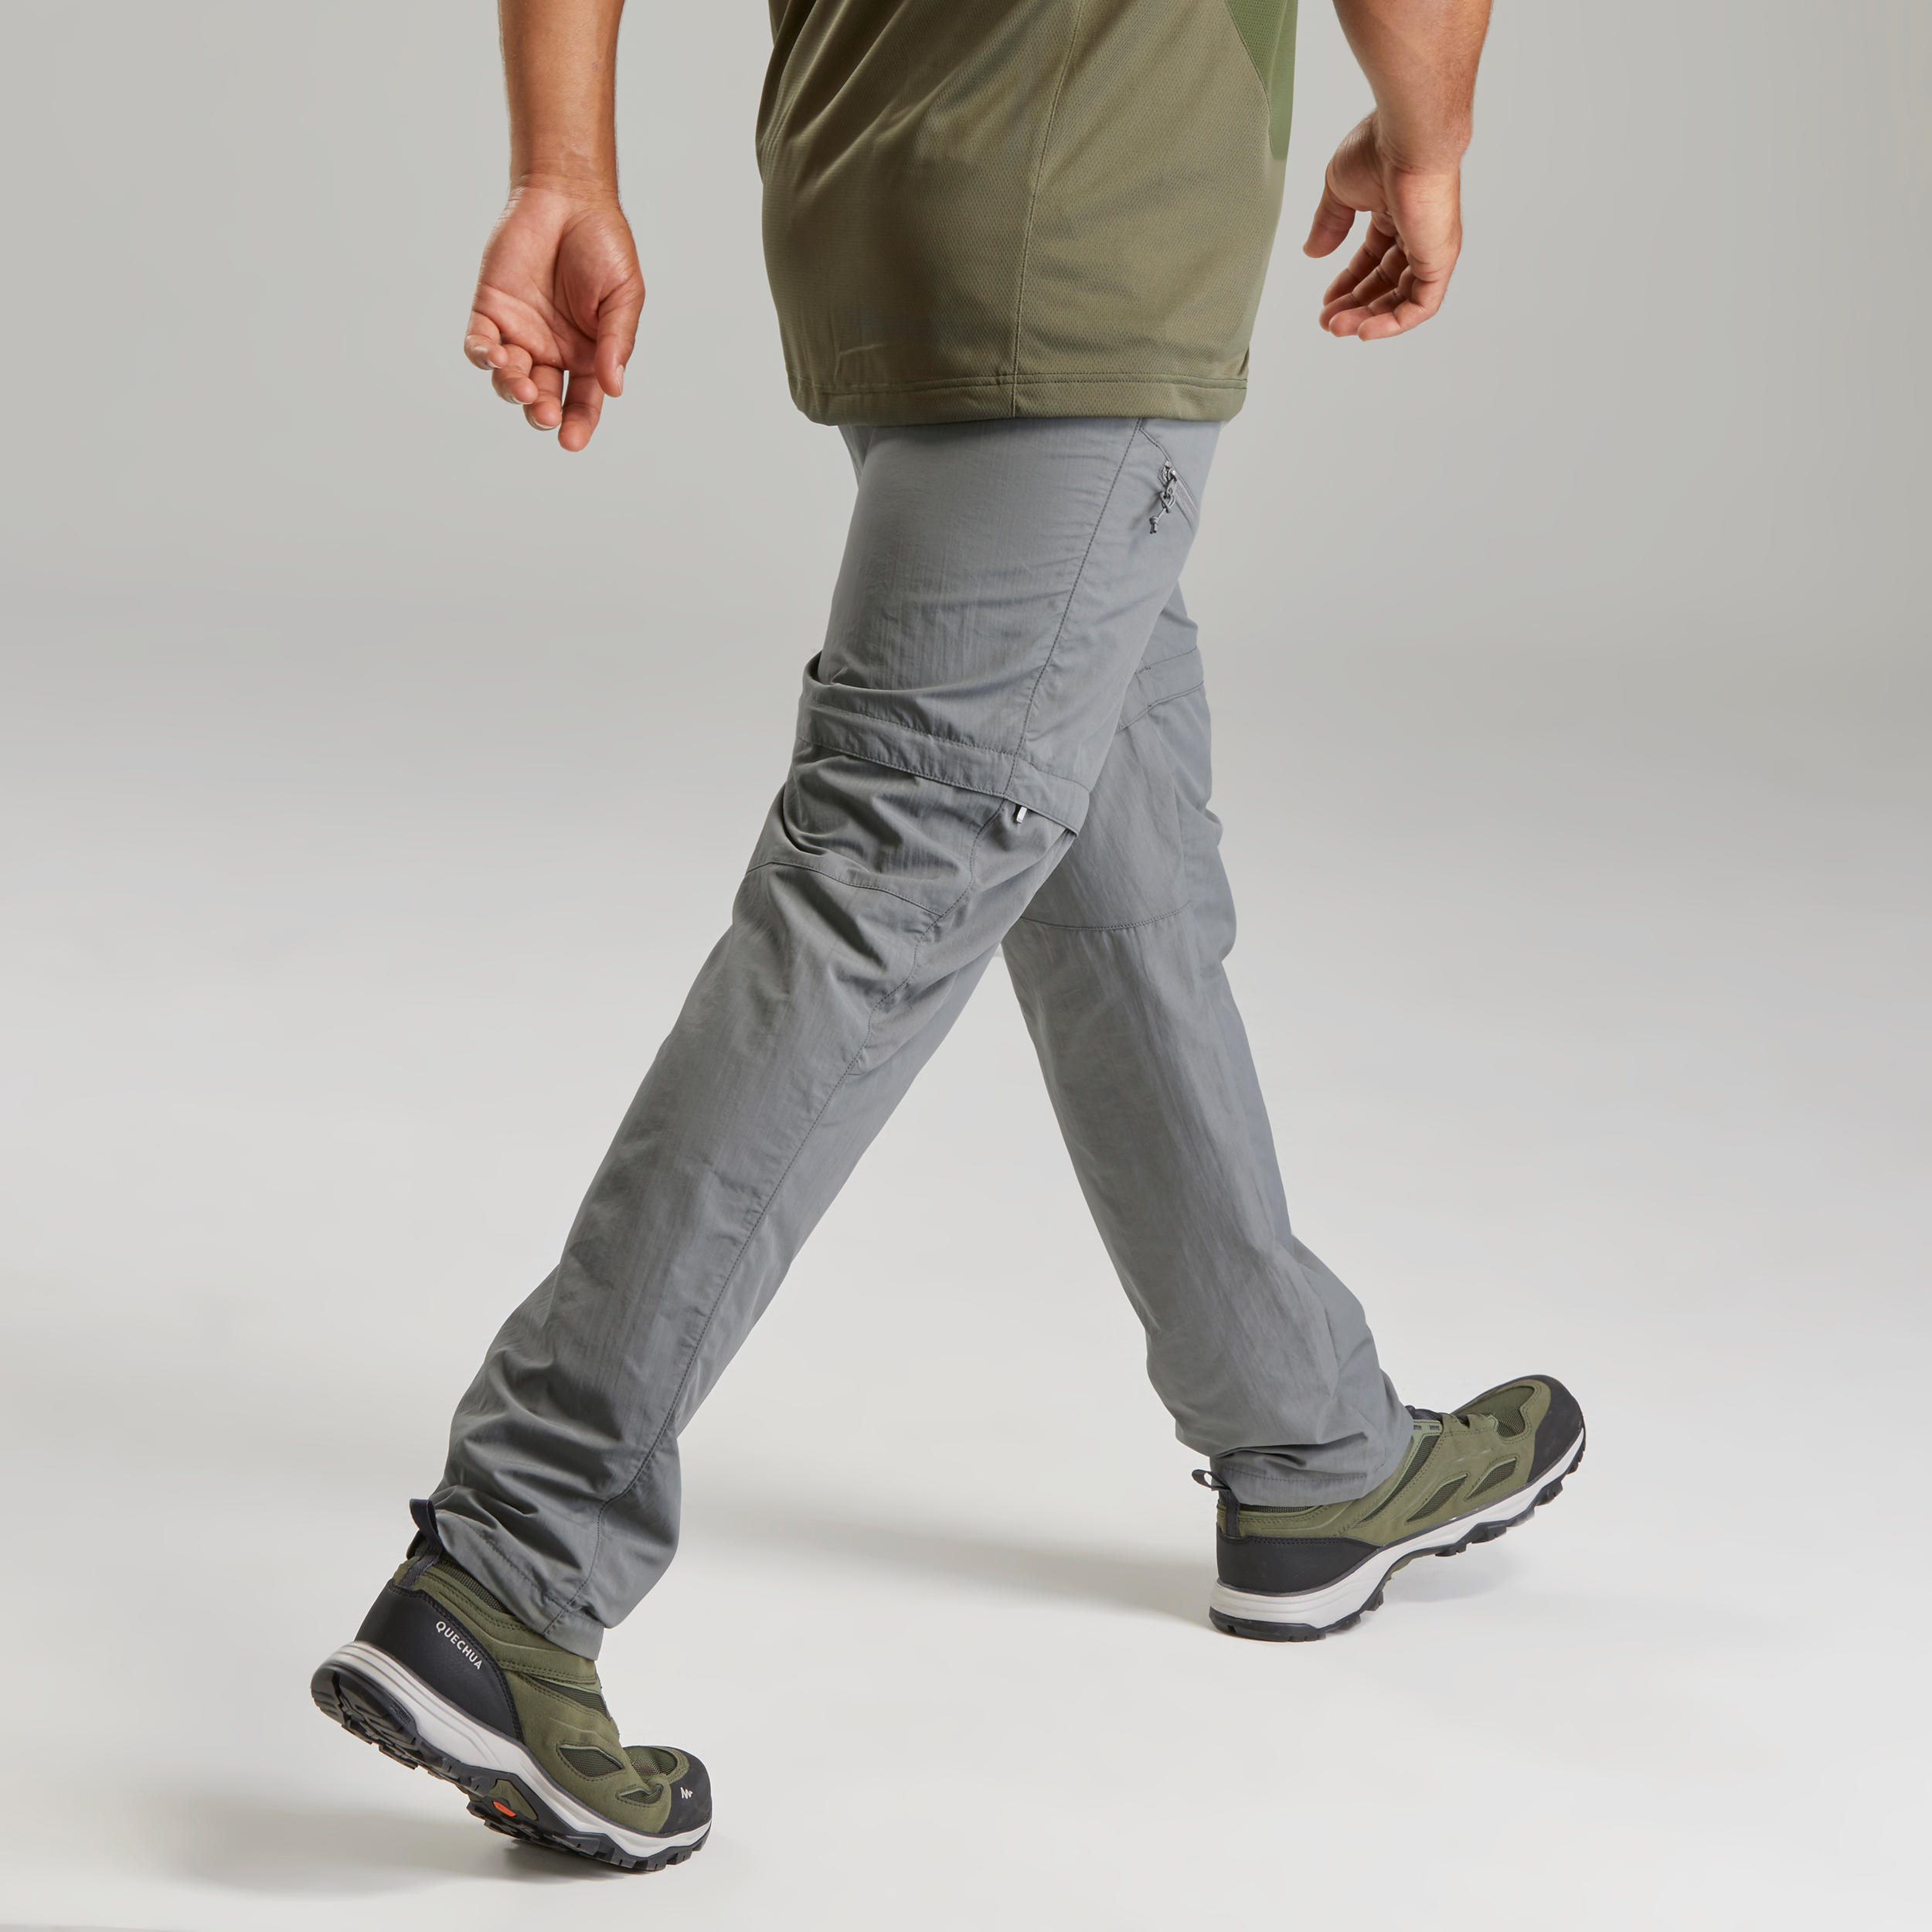 Buy Mens Modular Pants Online  Quechua MH150 Modular Pants for Men